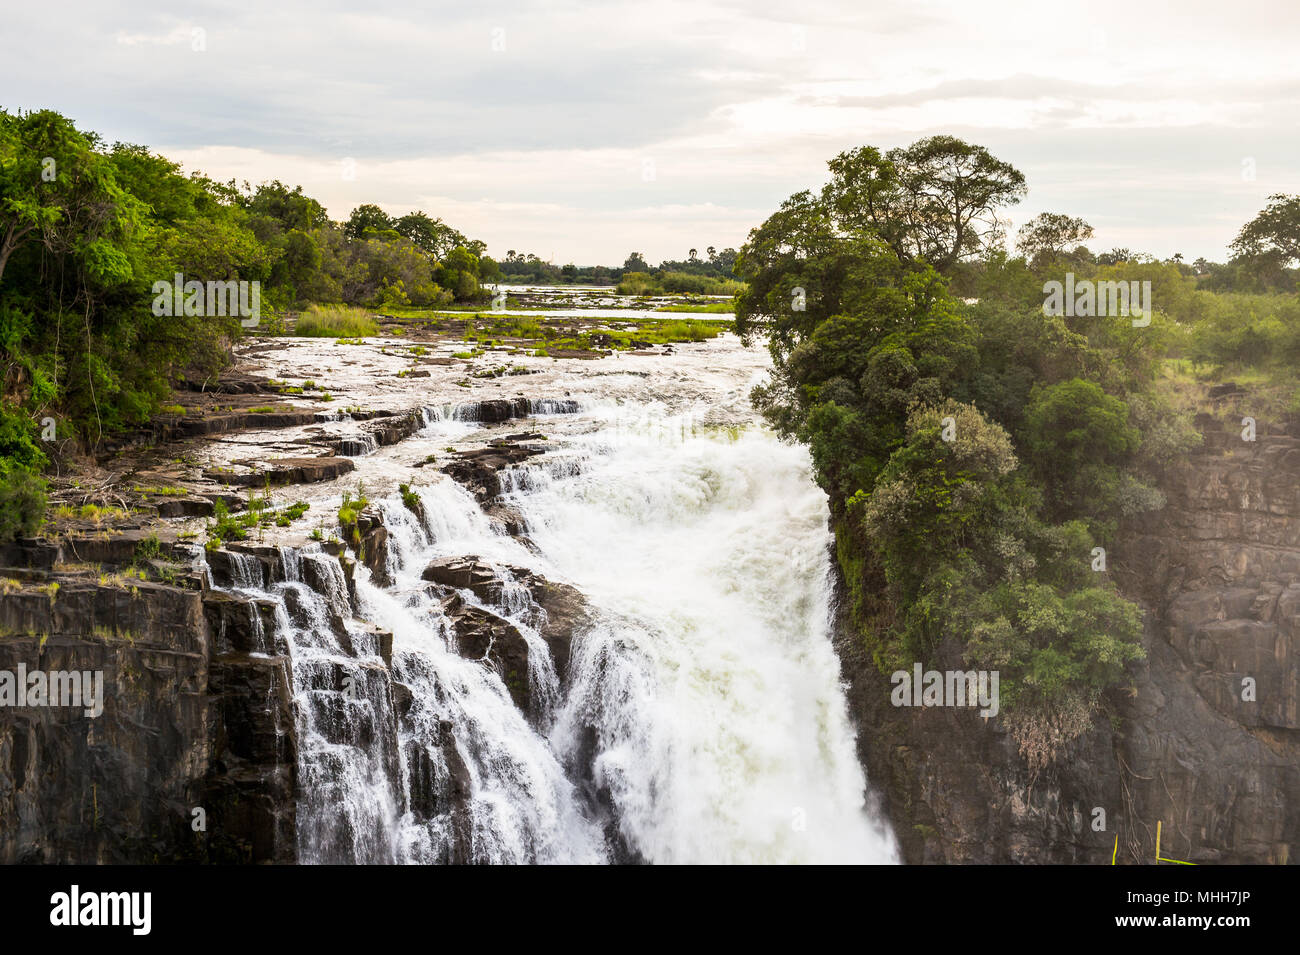 Amazing Victoria Falls, Zambezi River, Zimbabwe and Zambia Stock Photo